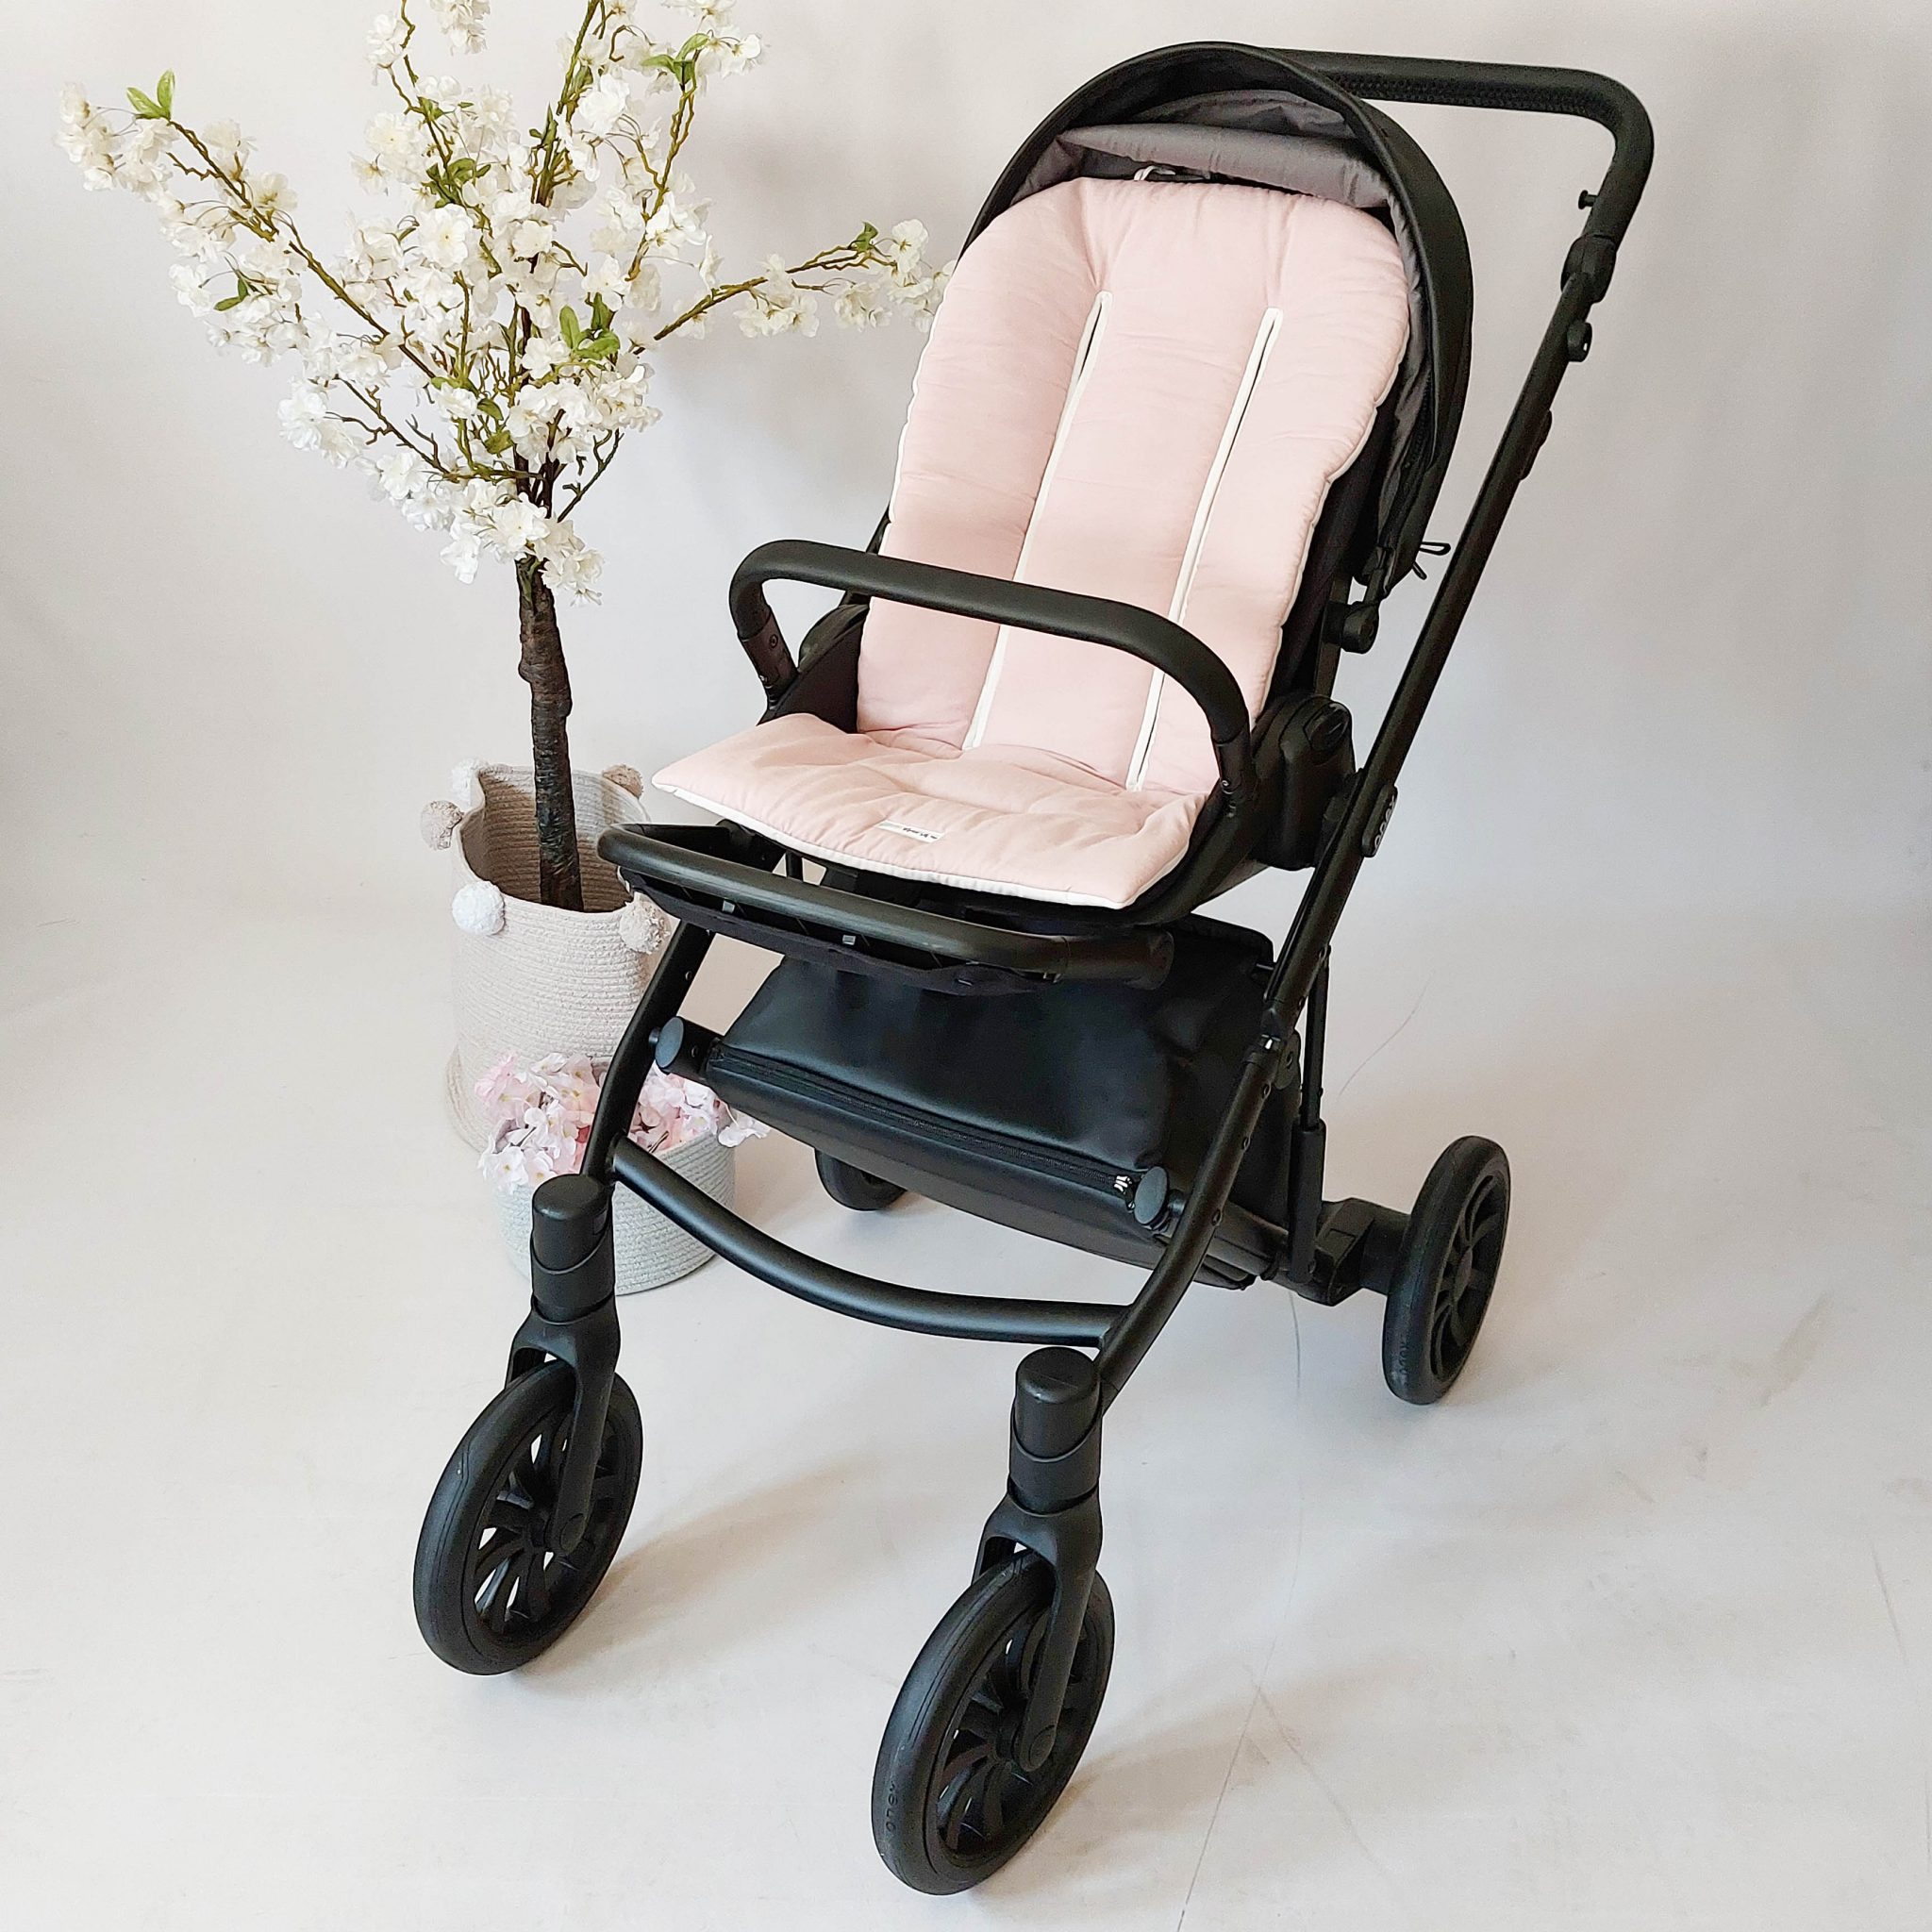 Colchonetas y fundas para sillas de bebé - comprar online